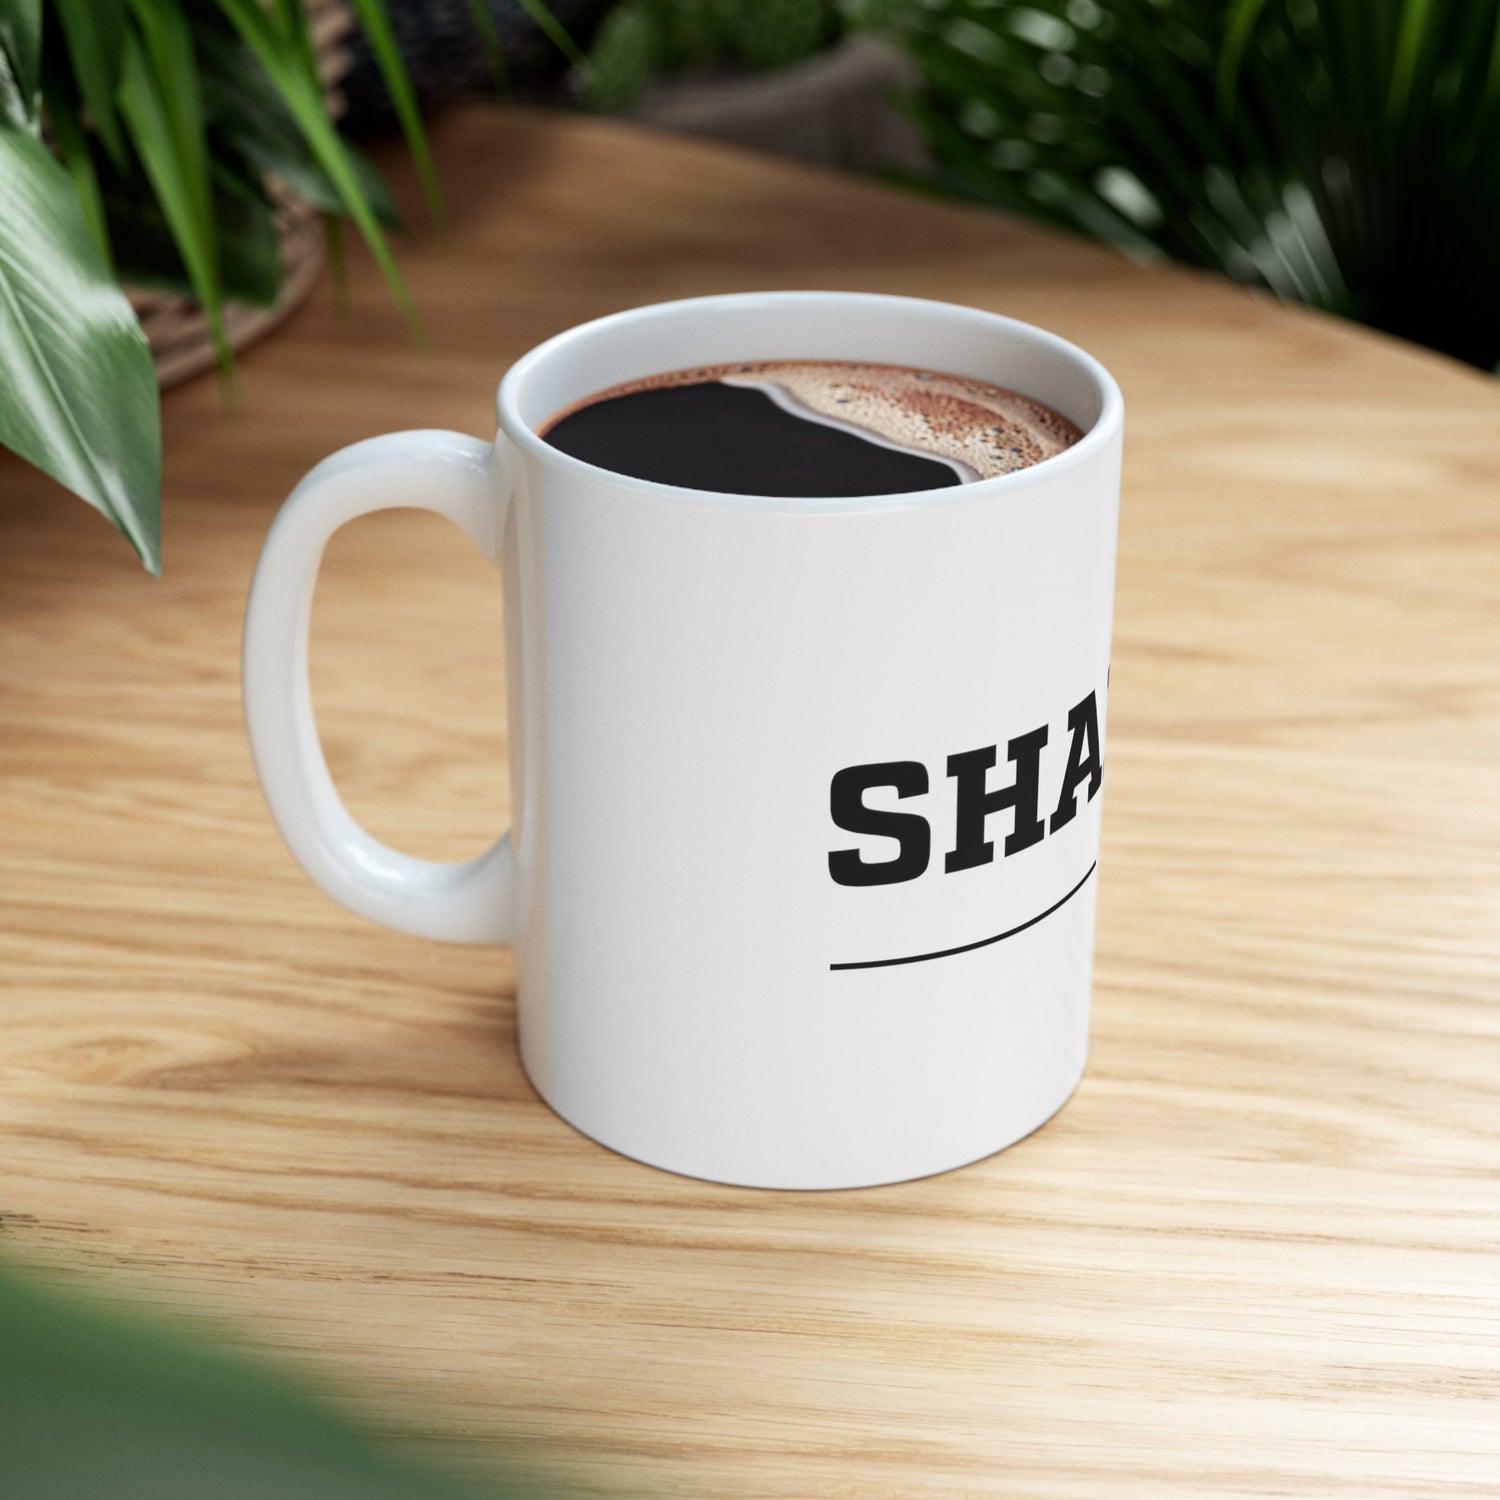 Sharing Coffee Mug 11oz